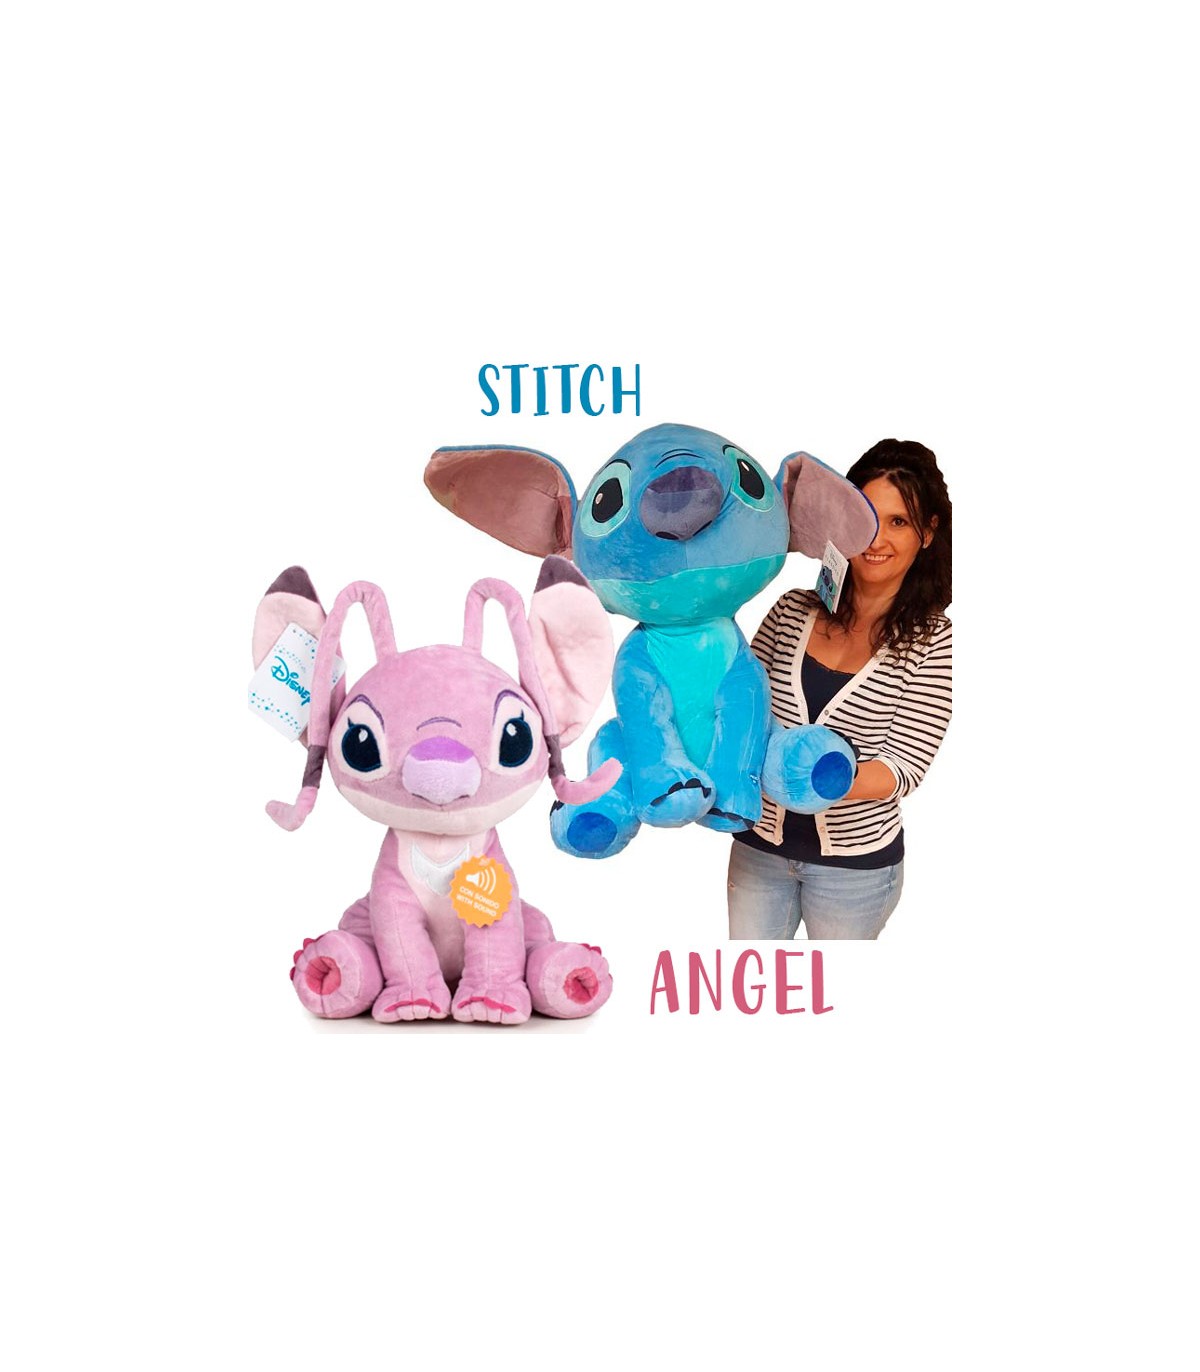 Disney Lilo and Stitch peluche Stitch con sonidos desde 11,50